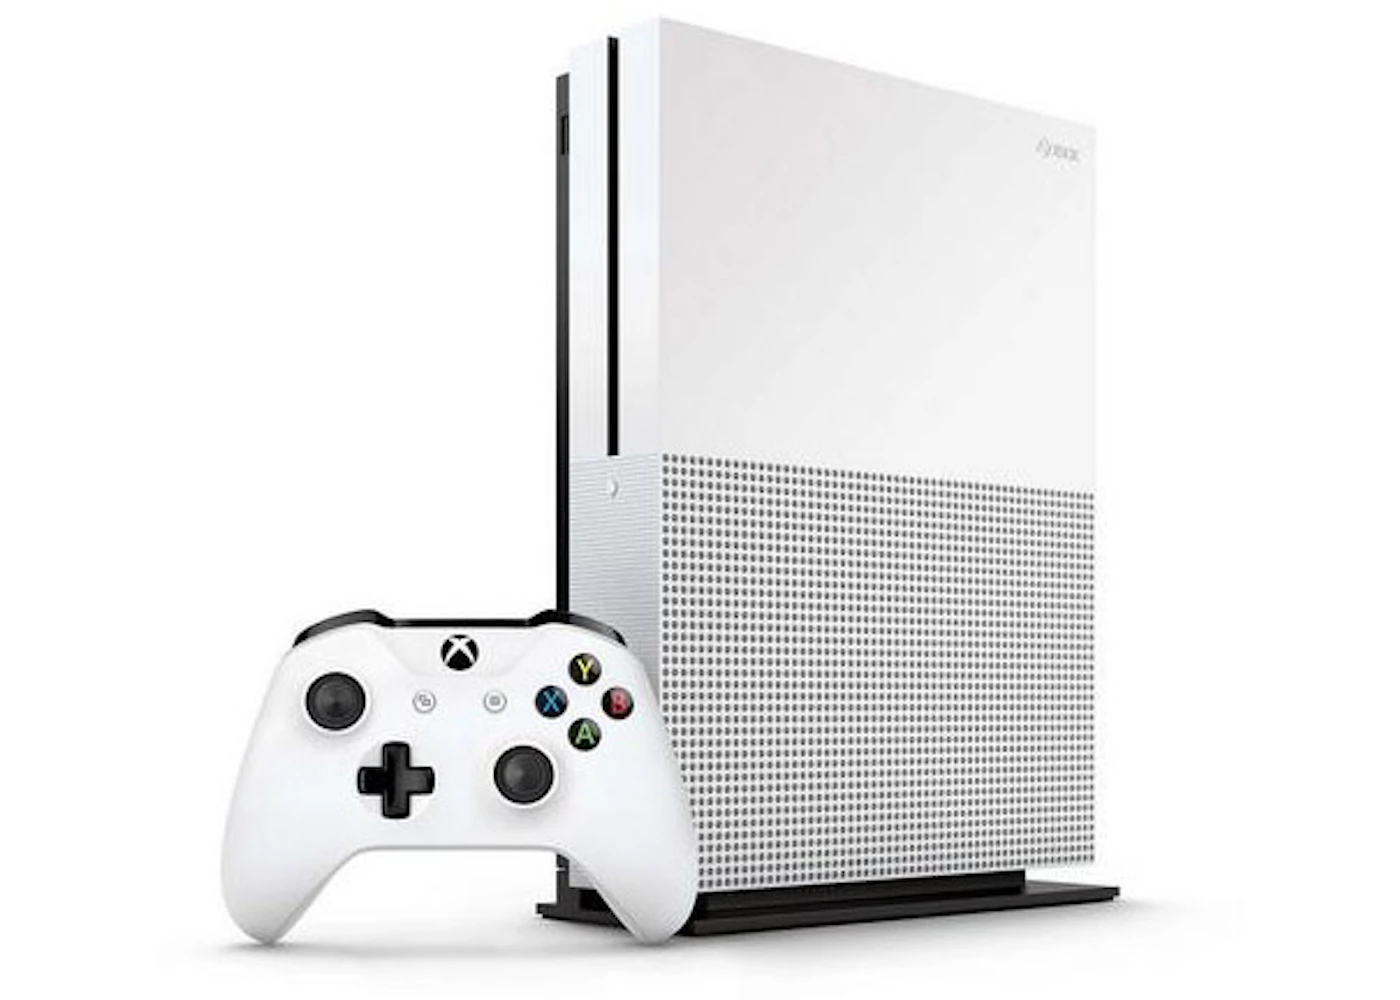 Microsoft Xbox One XBOX ONE S 1TB